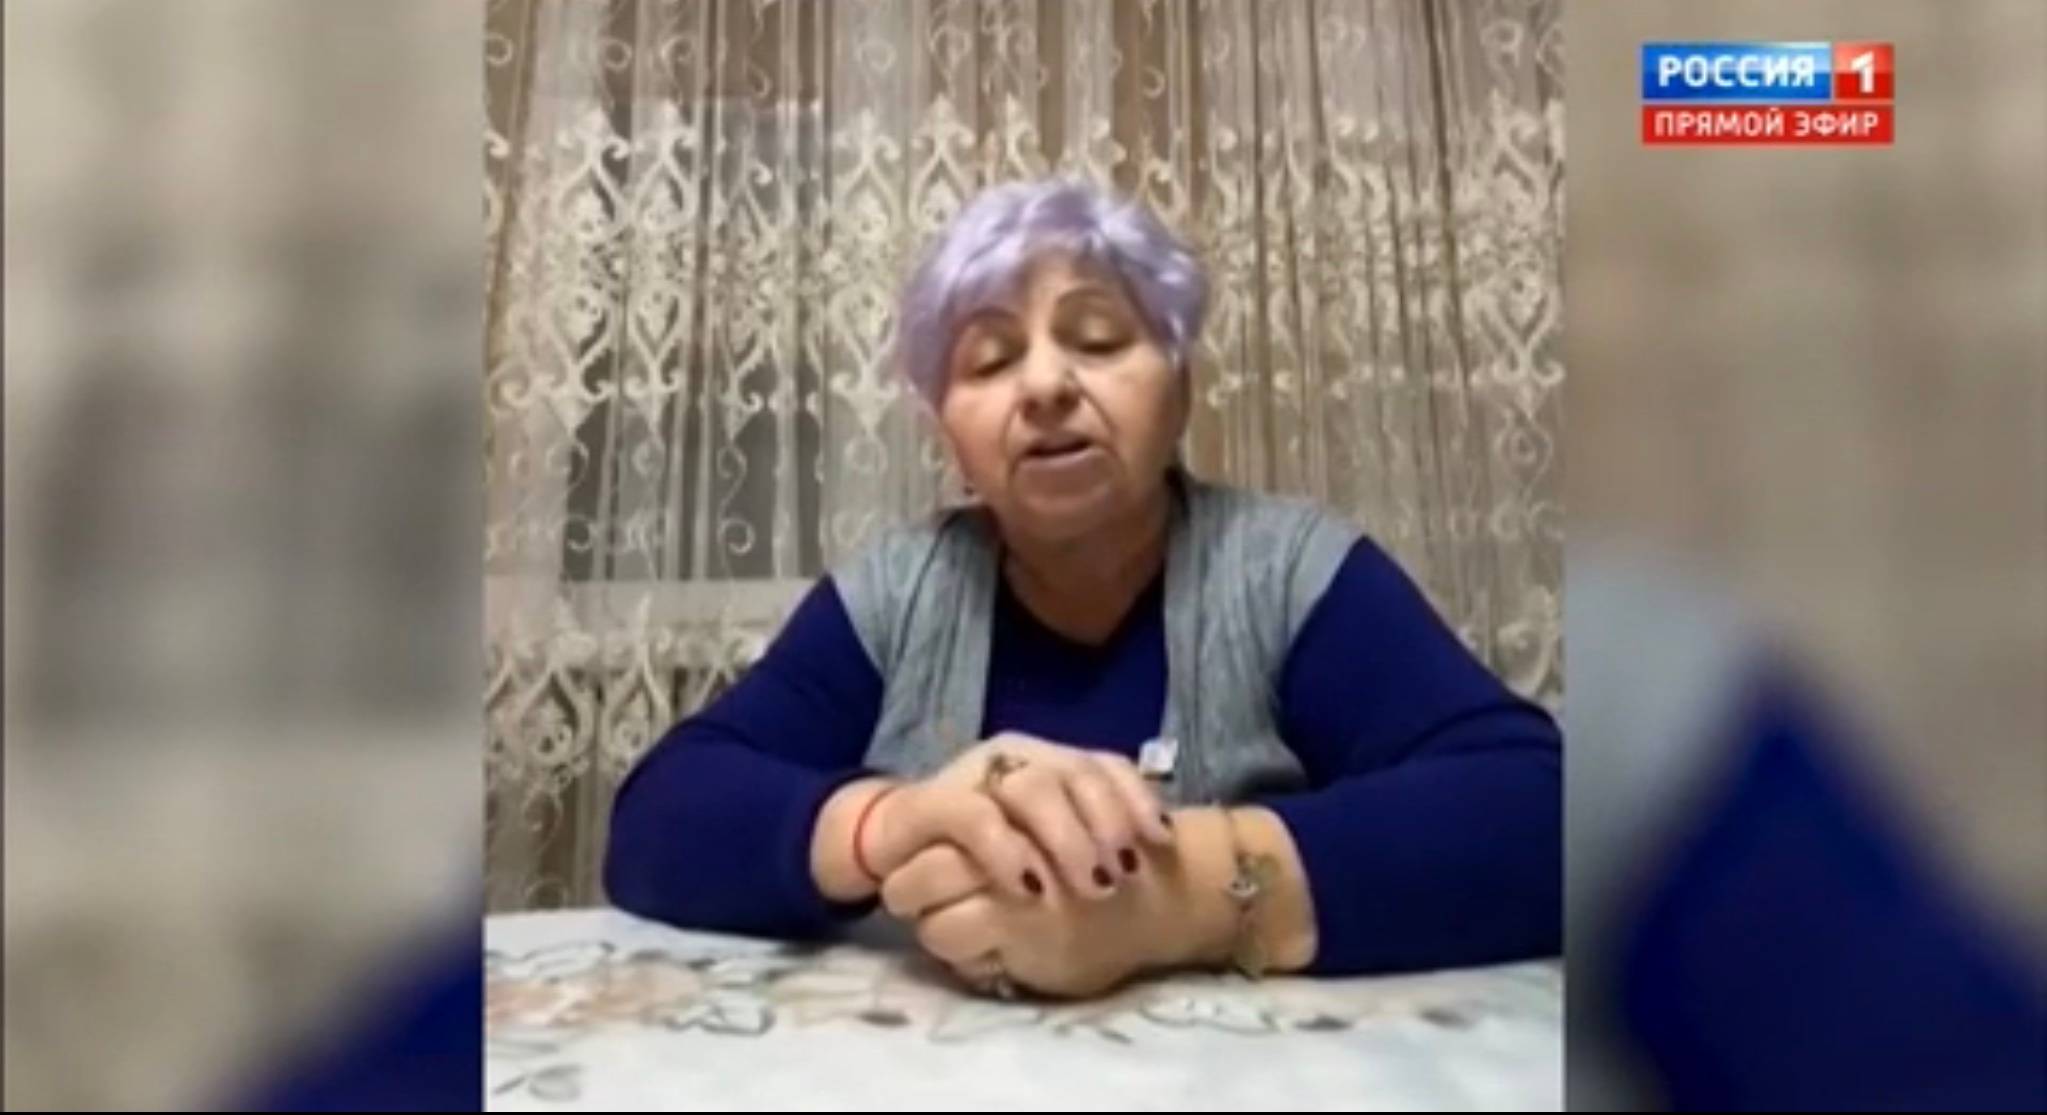 Kobieta o siwo-fioletowych włosach nagrywa wypowiedź do Putona